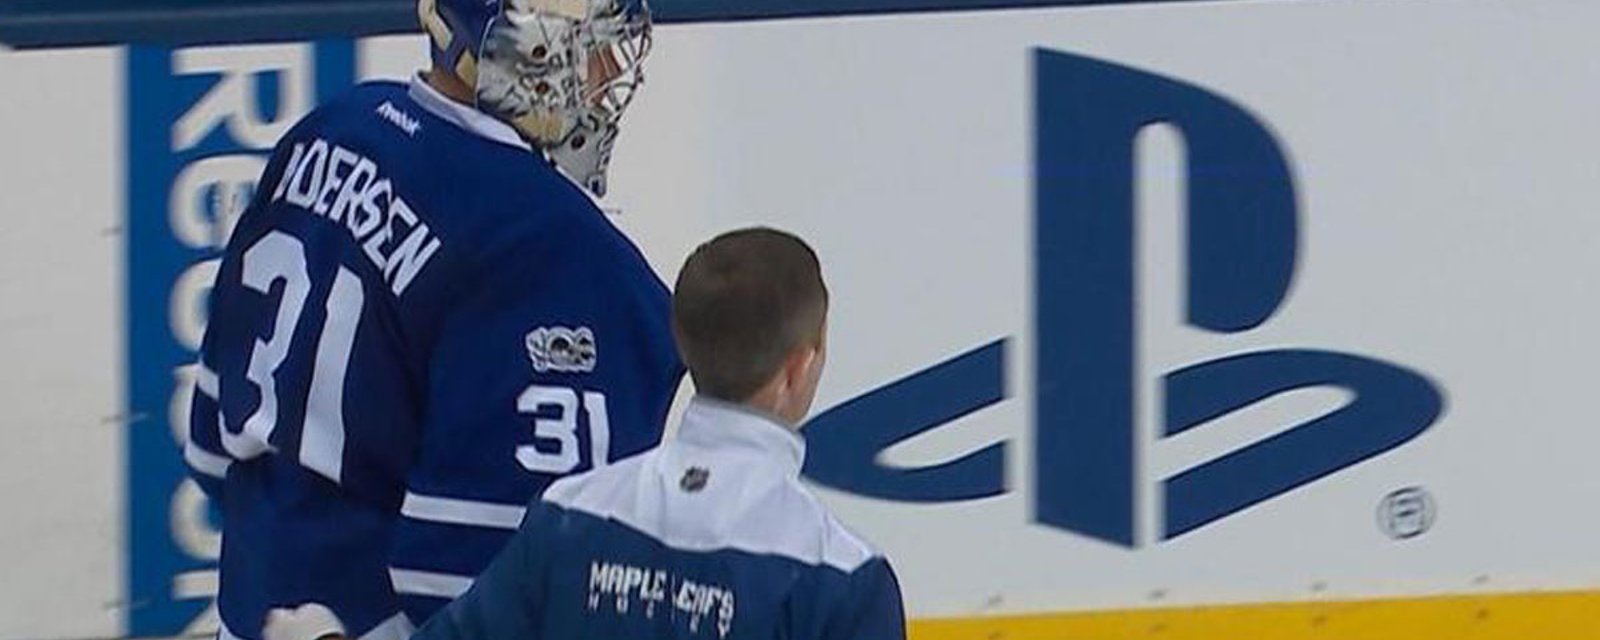 Breaking: Andersen goes down hard in Leafs' practice! 